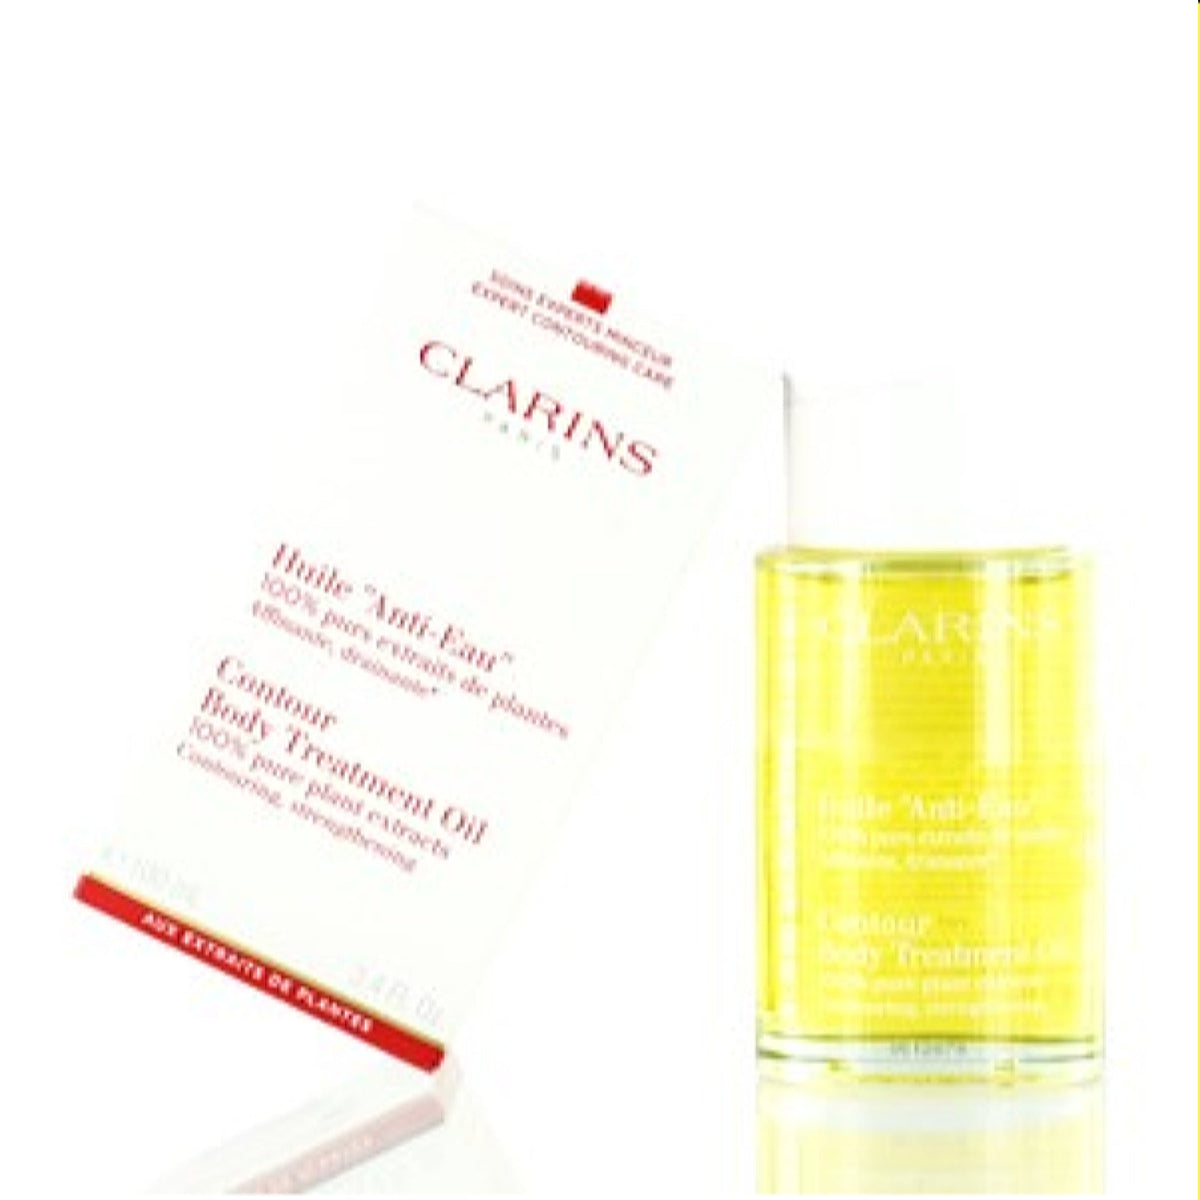 Clarins Contour Body Treatment Oil 3.4 Oz (100 Ml) 051115